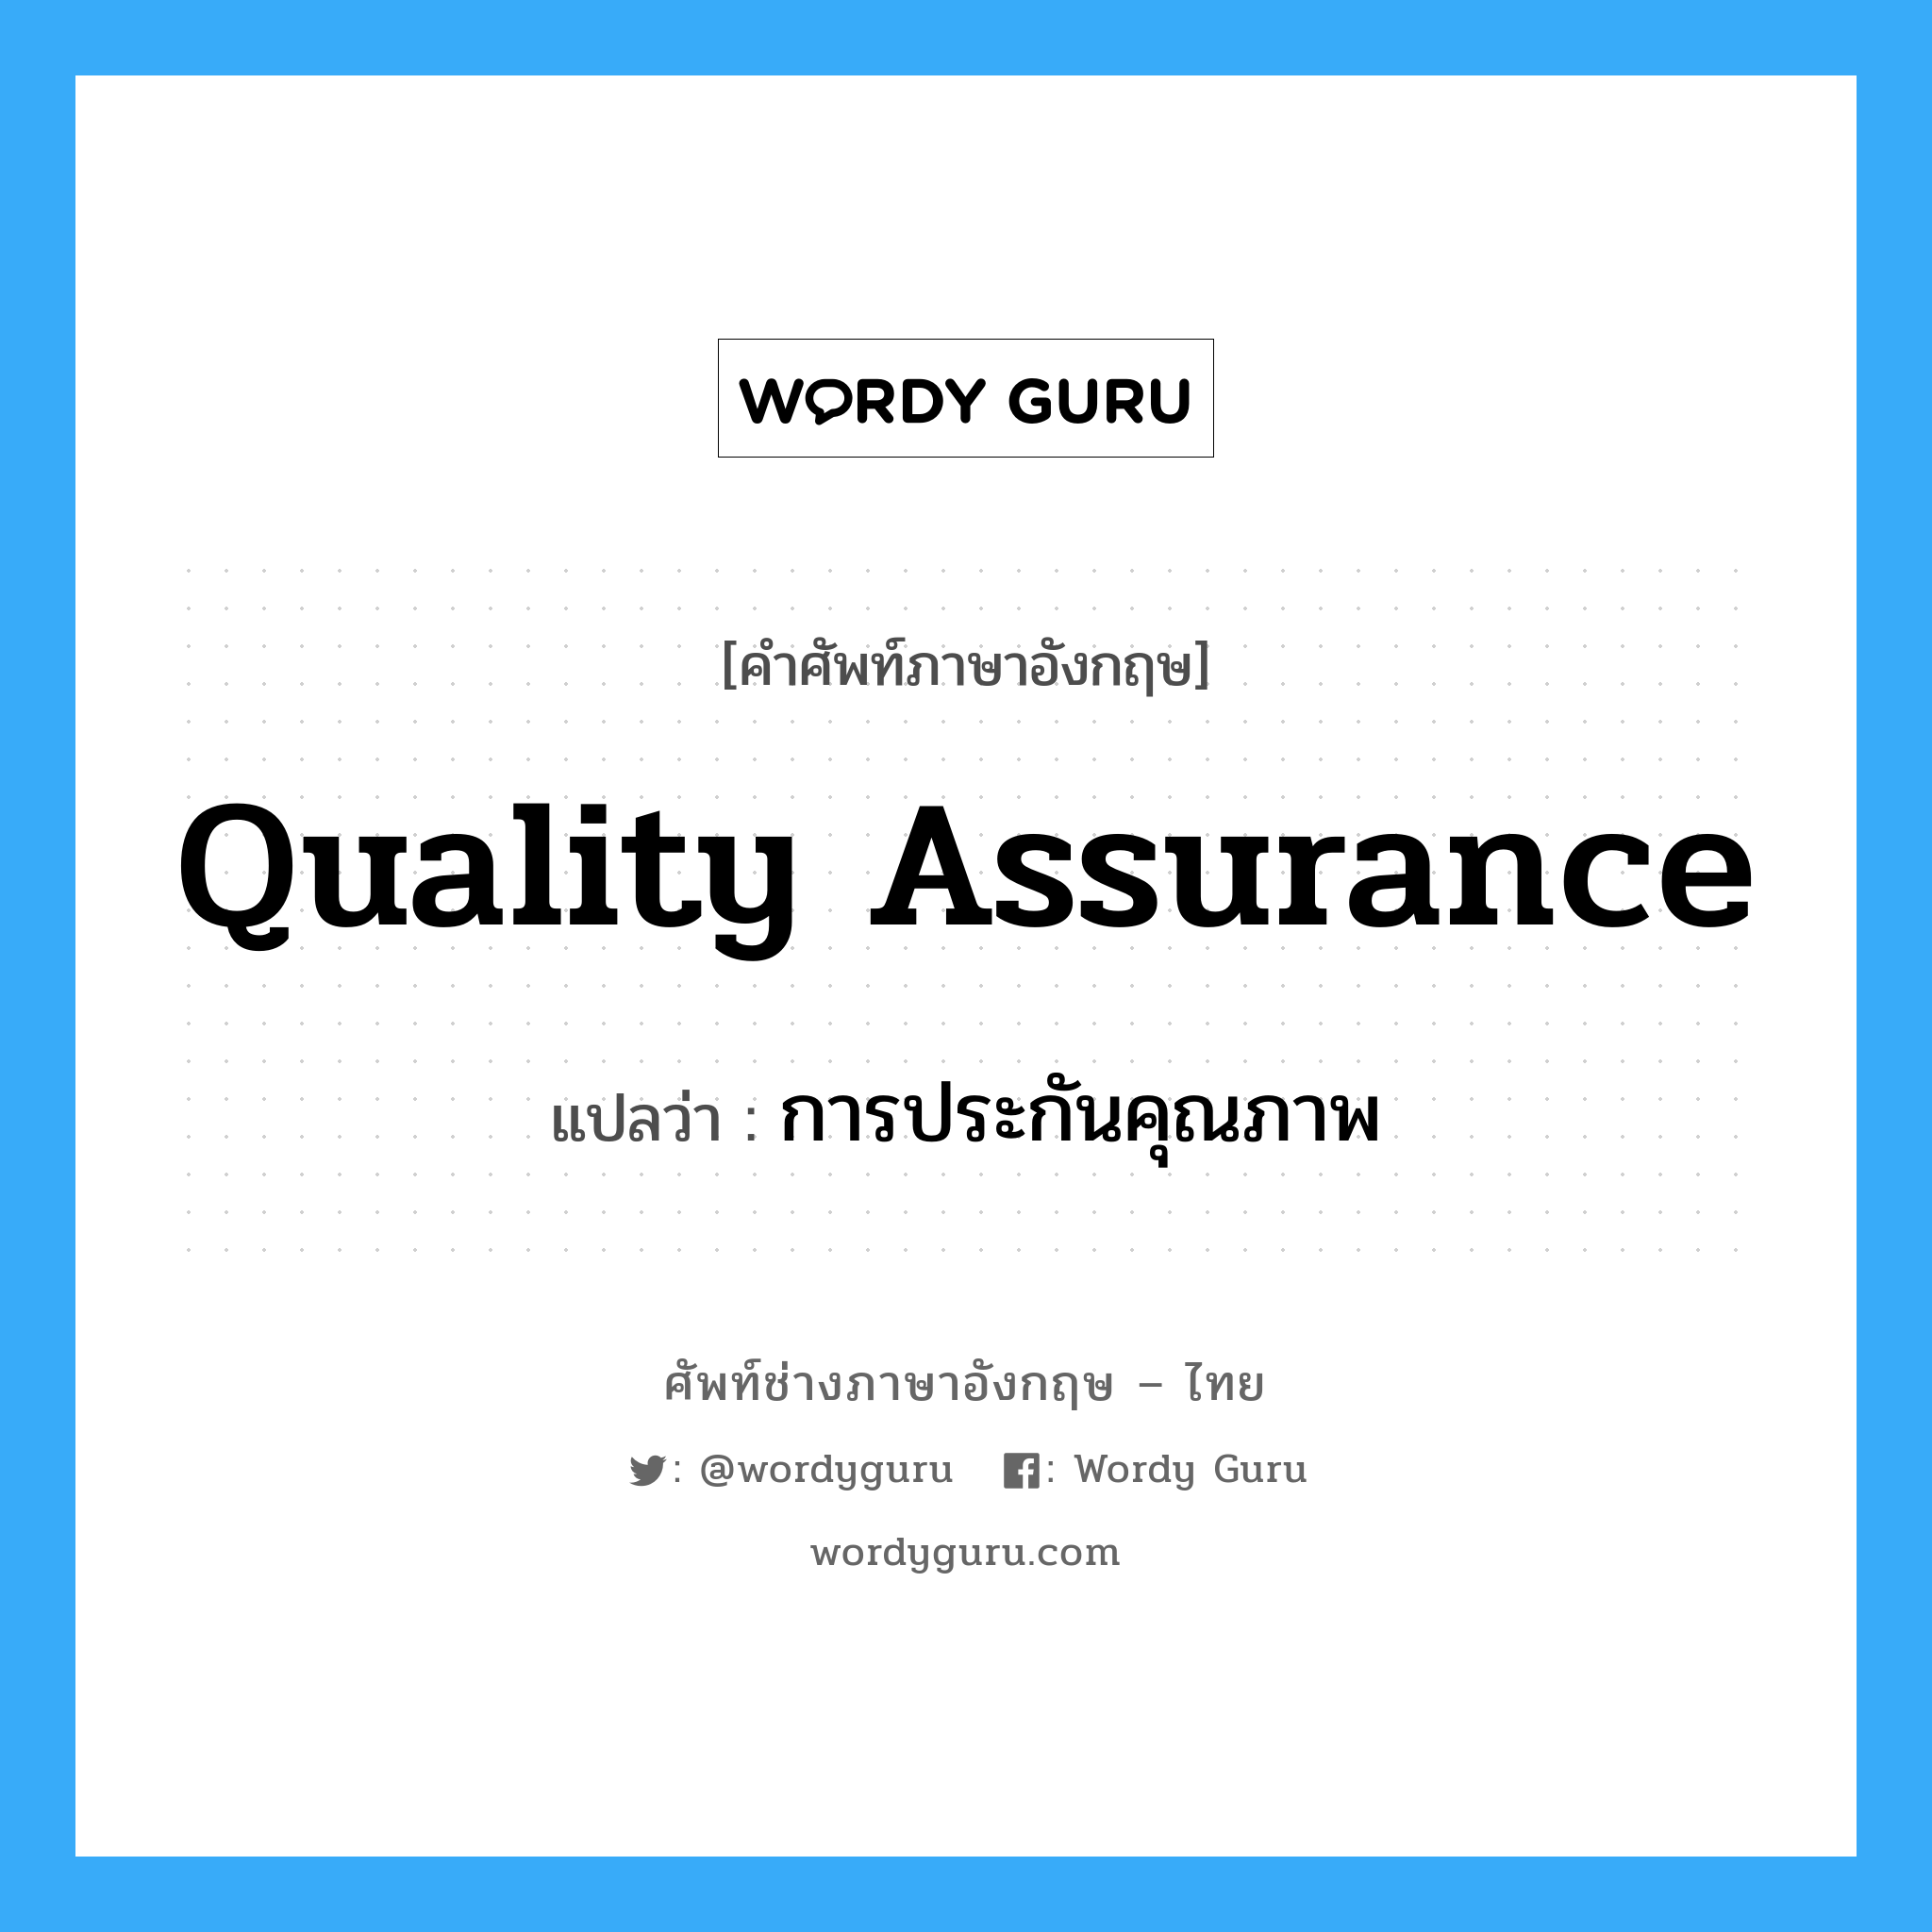 การประกันคุณภาพ ภาษาอังกฤษ?, คำศัพท์ช่างภาษาอังกฤษ - ไทย การประกันคุณภาพ คำศัพท์ภาษาอังกฤษ การประกันคุณภาพ แปลว่า Quality Assurance